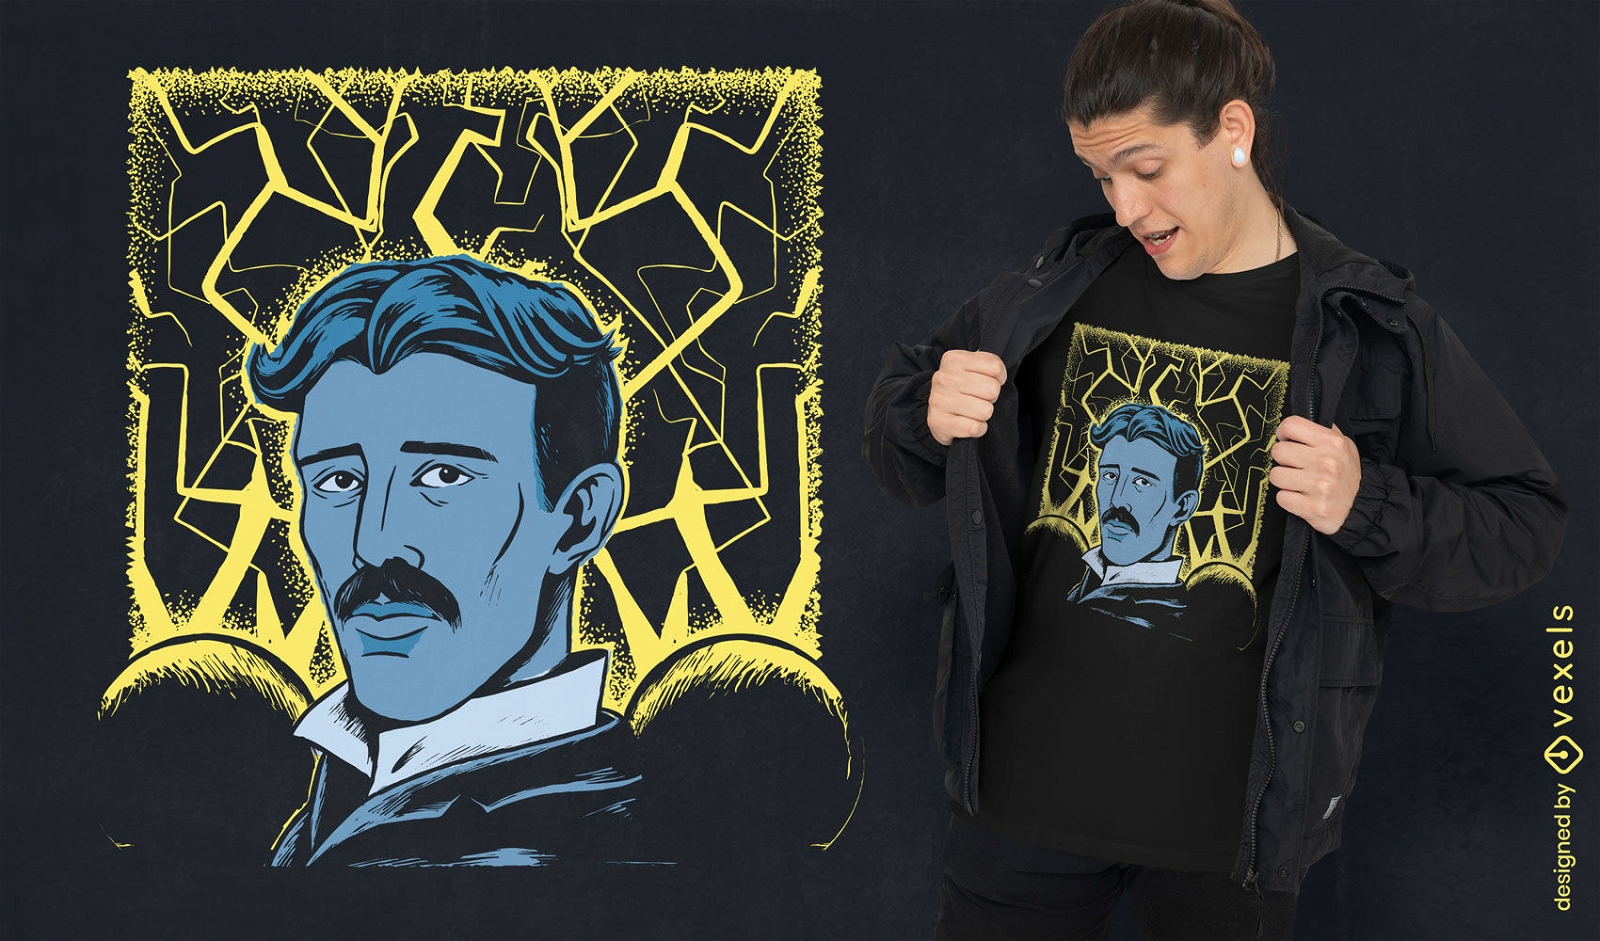 Nikola tesla with electricity t-shirt design